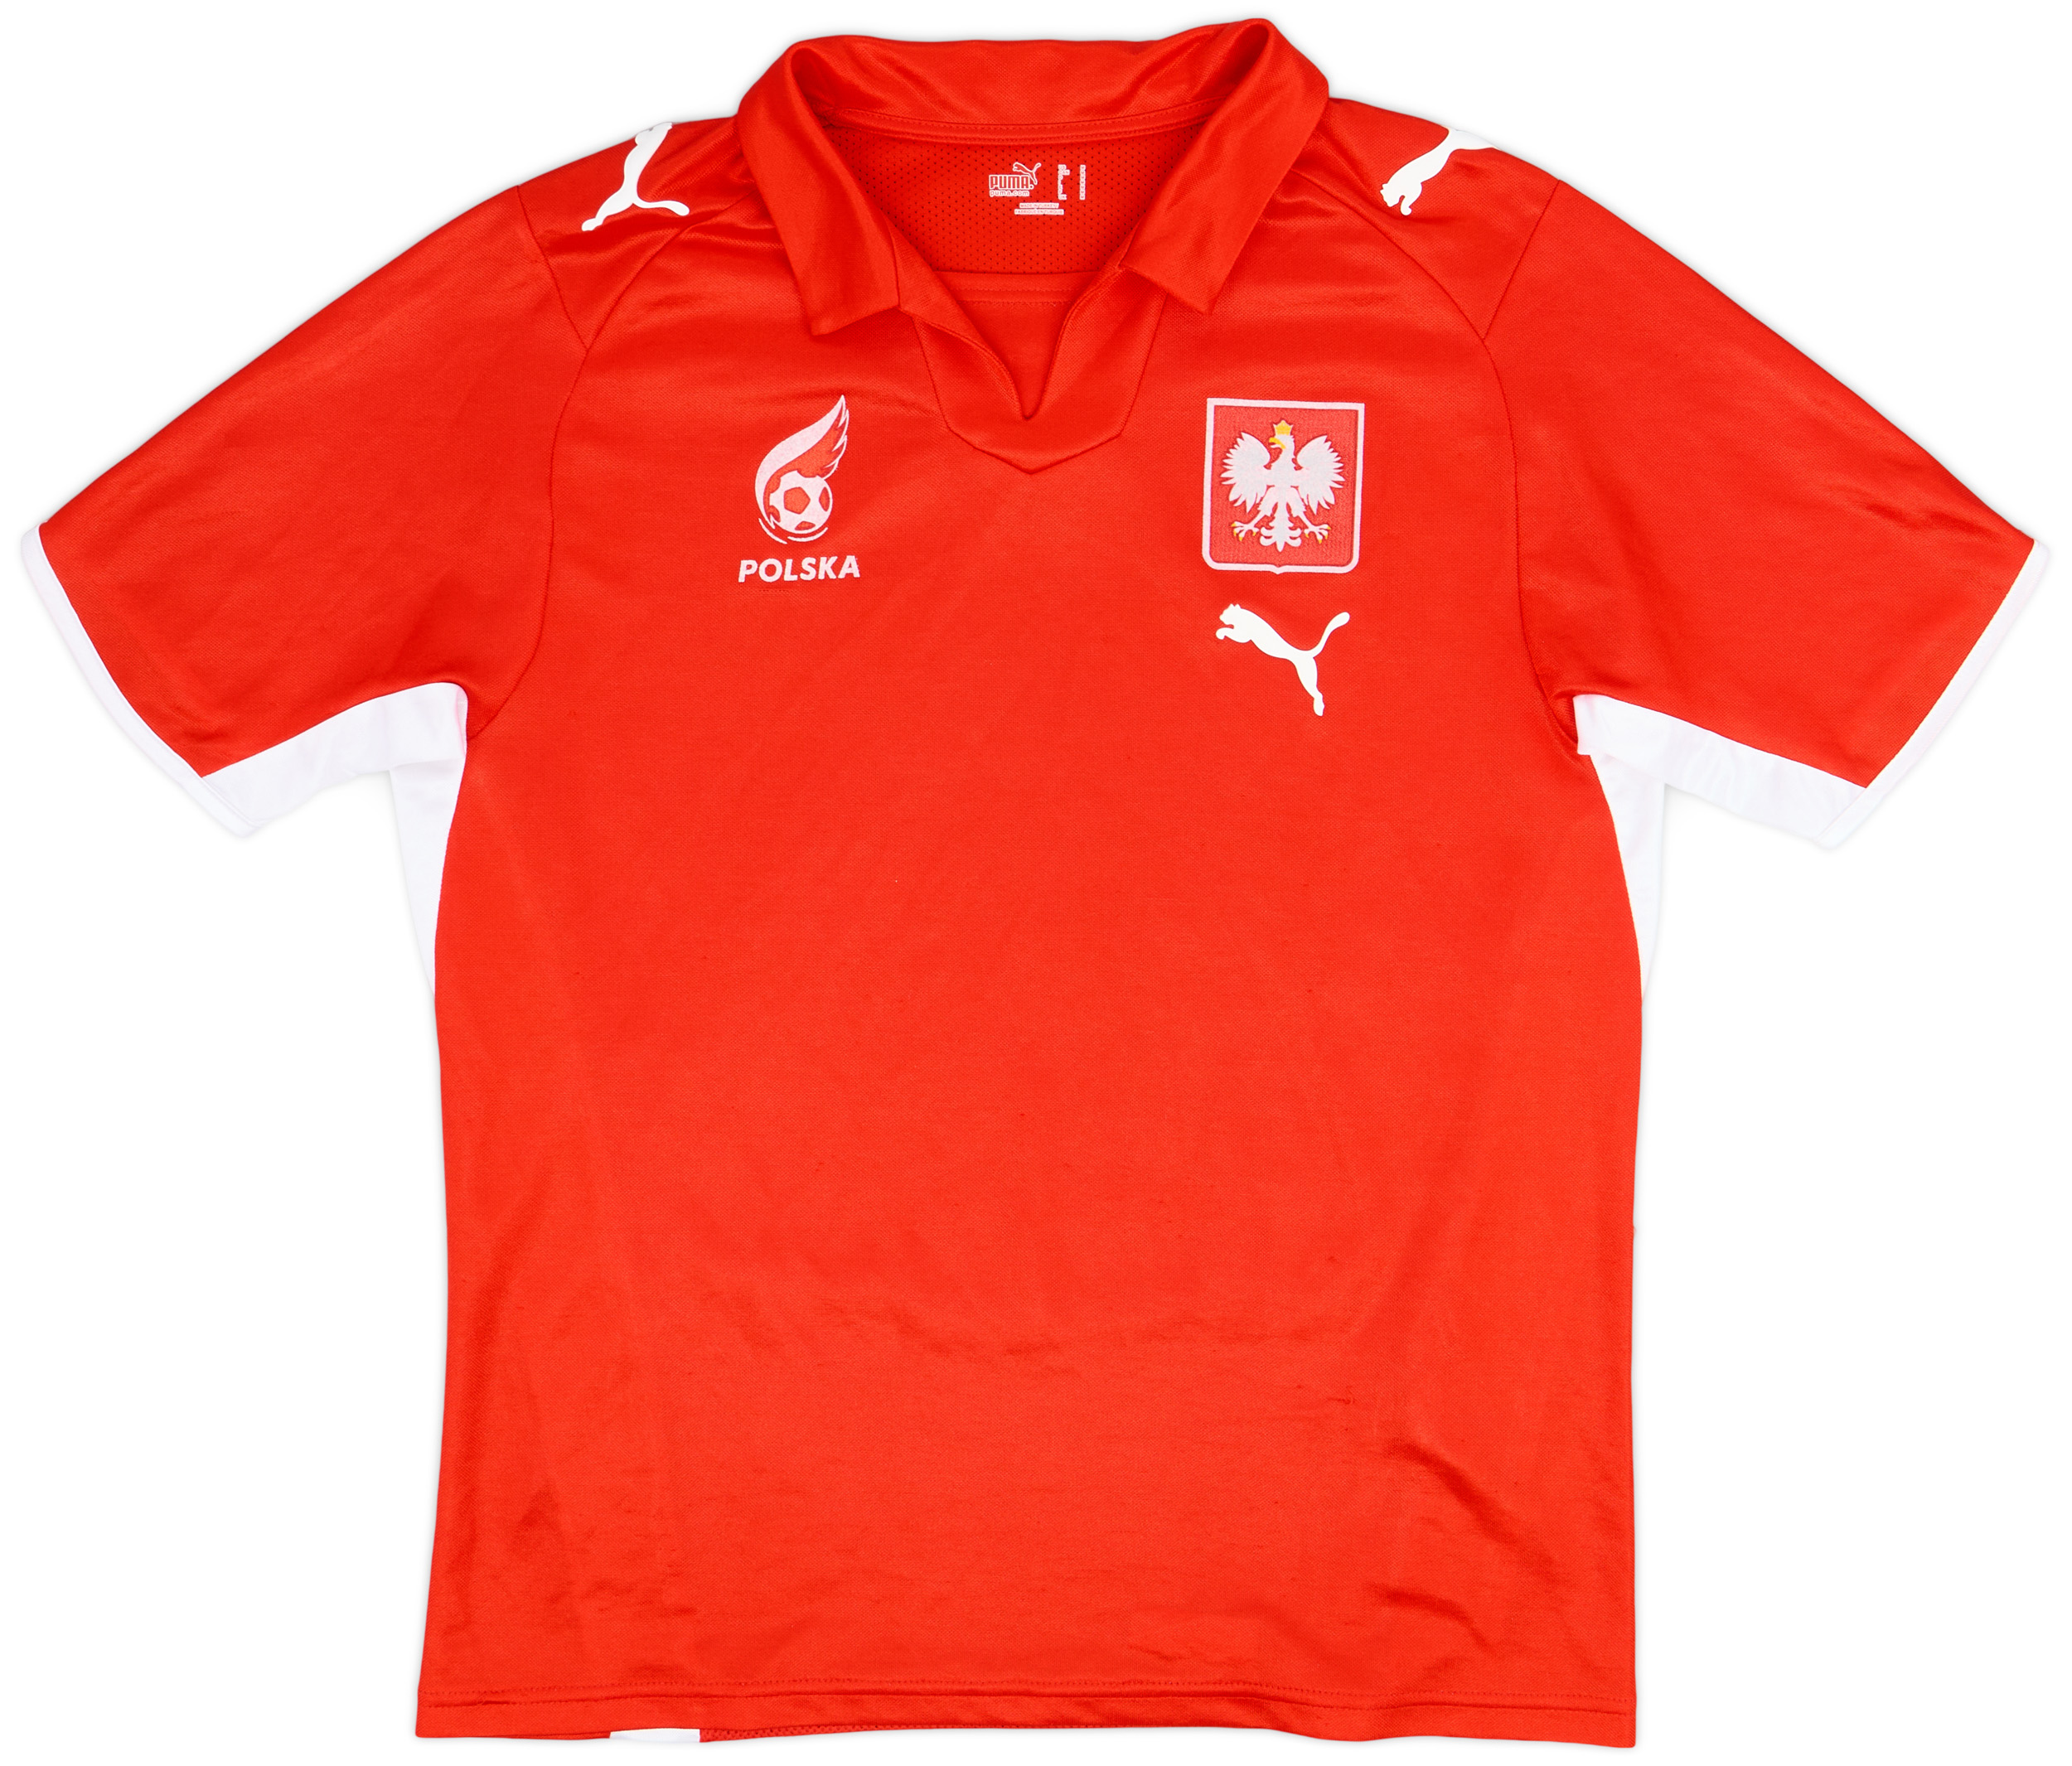 2008 Poland Away Shirt - 9/10 - ()